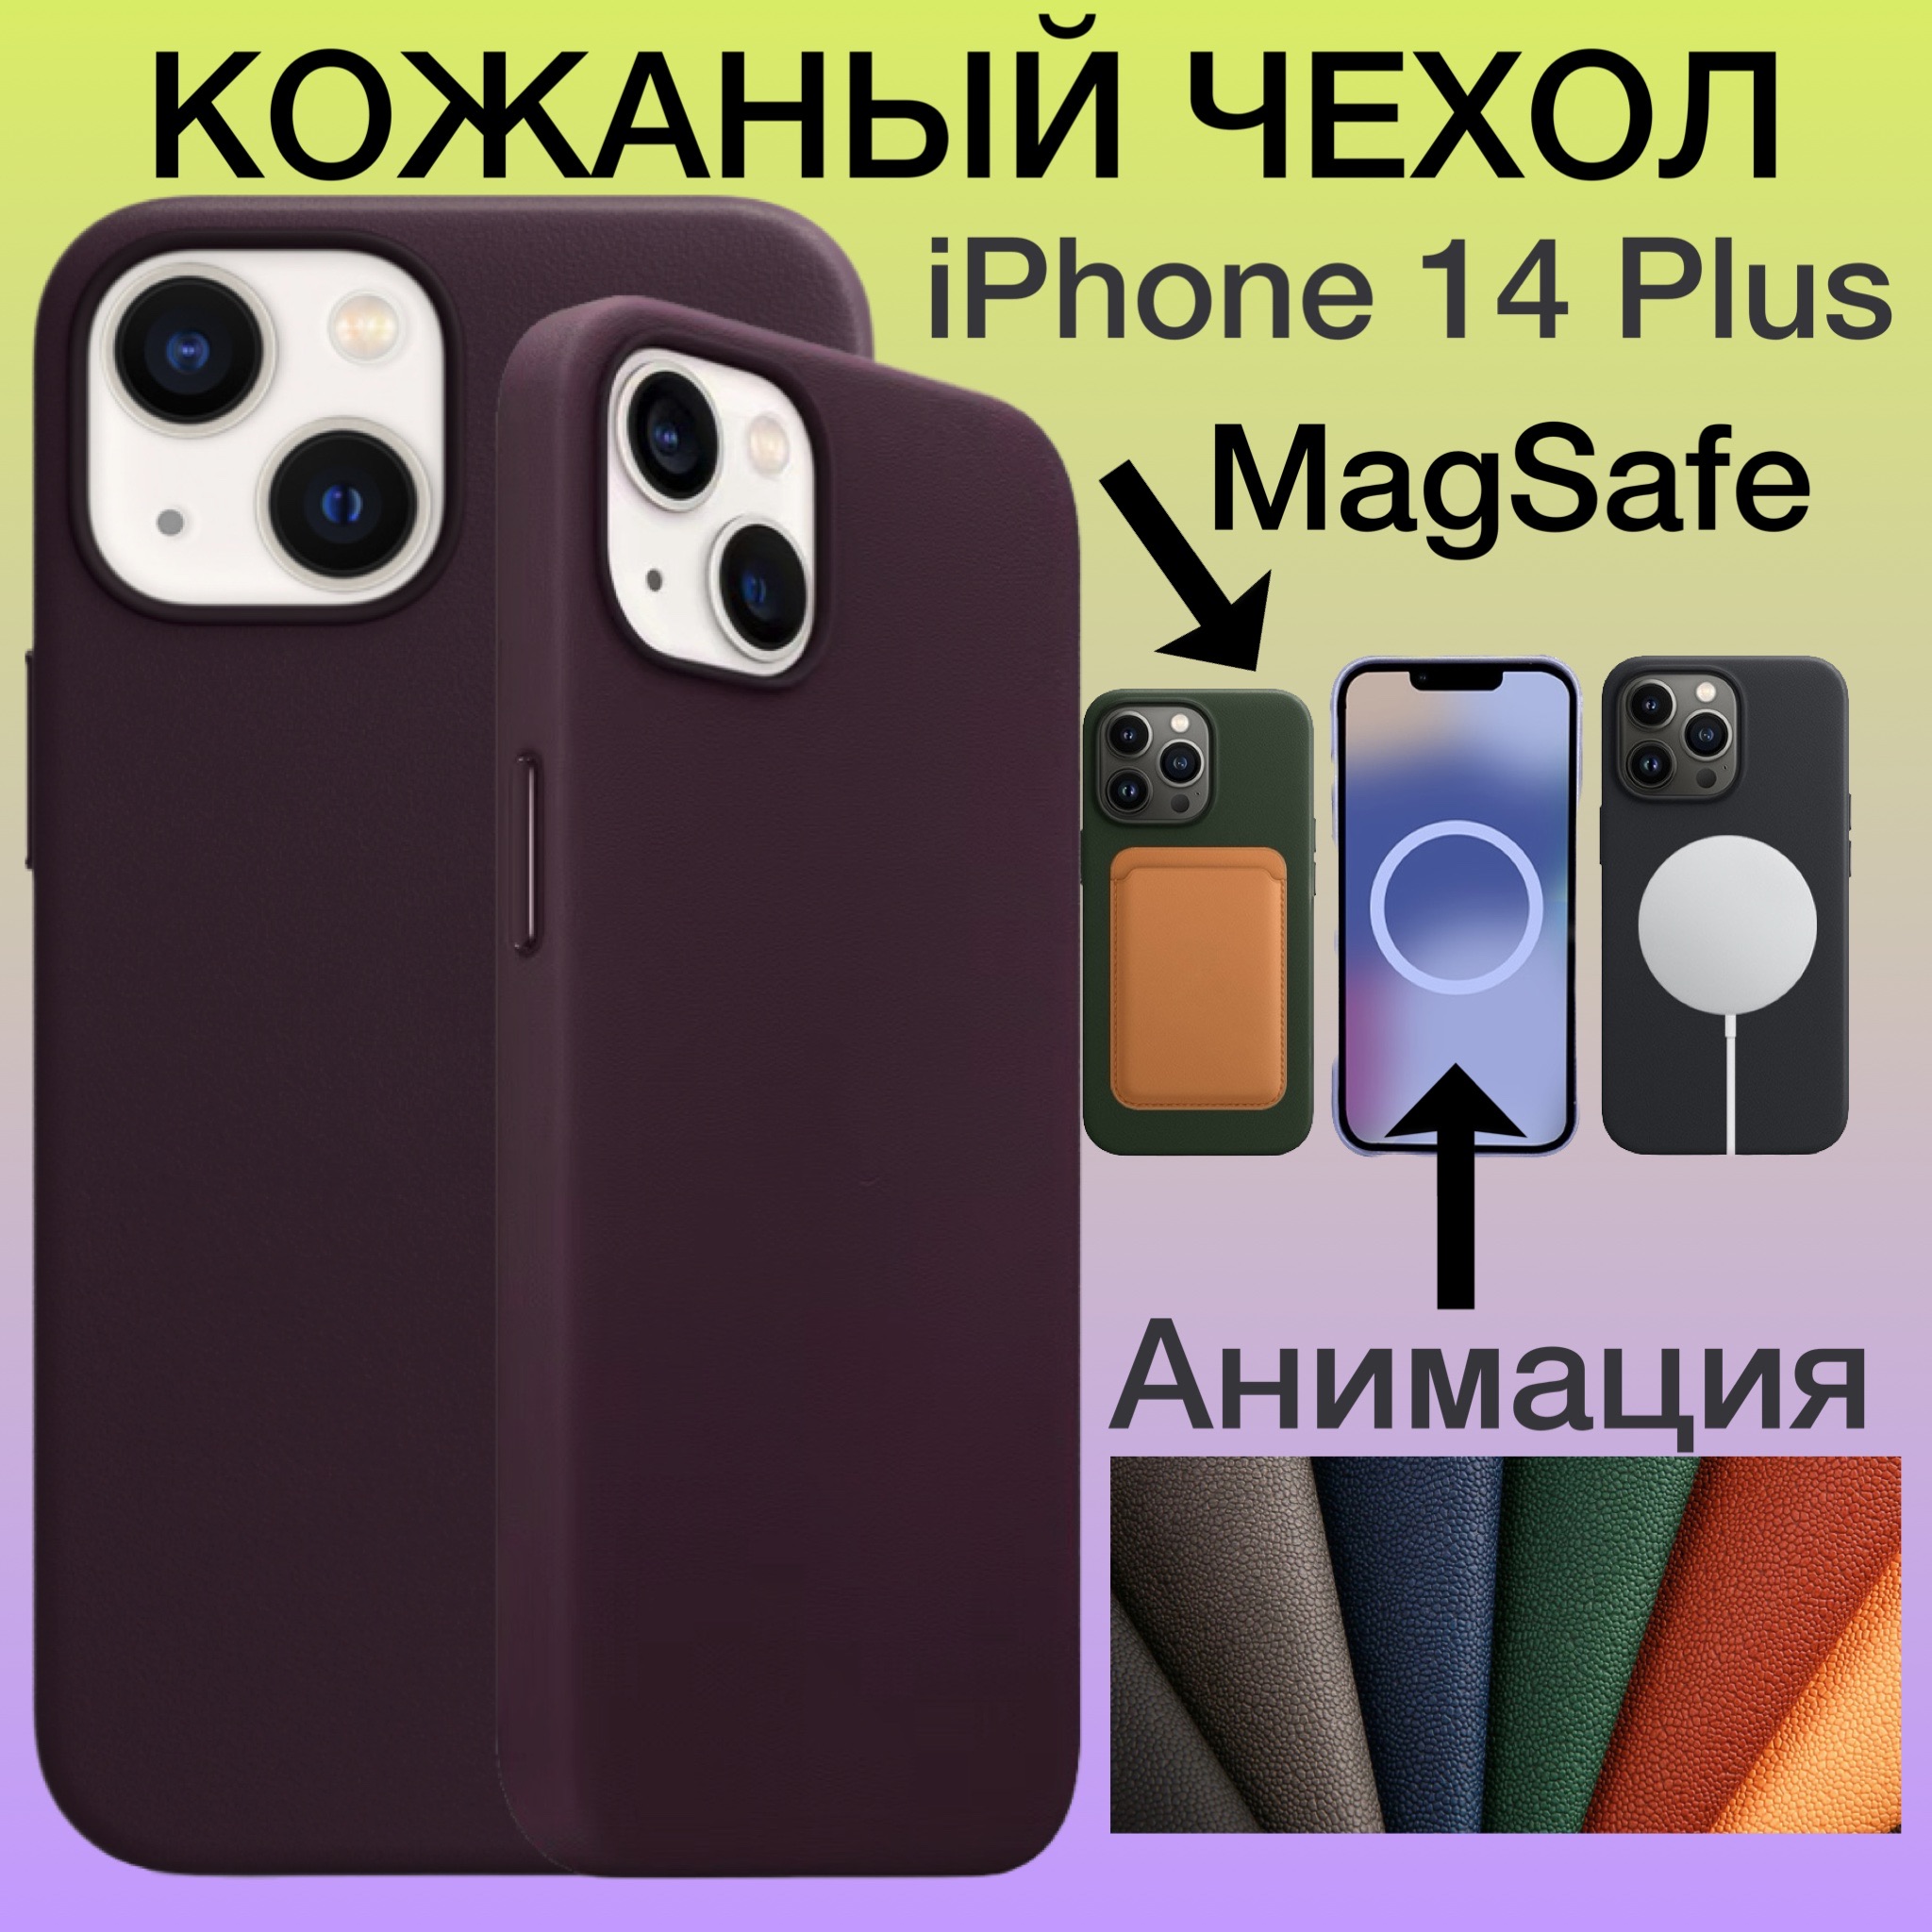 Кожаный чехол на iPhone 14 Plus с MagSafe и Анимацией для Айфон 14 Плюс цвет бордовый